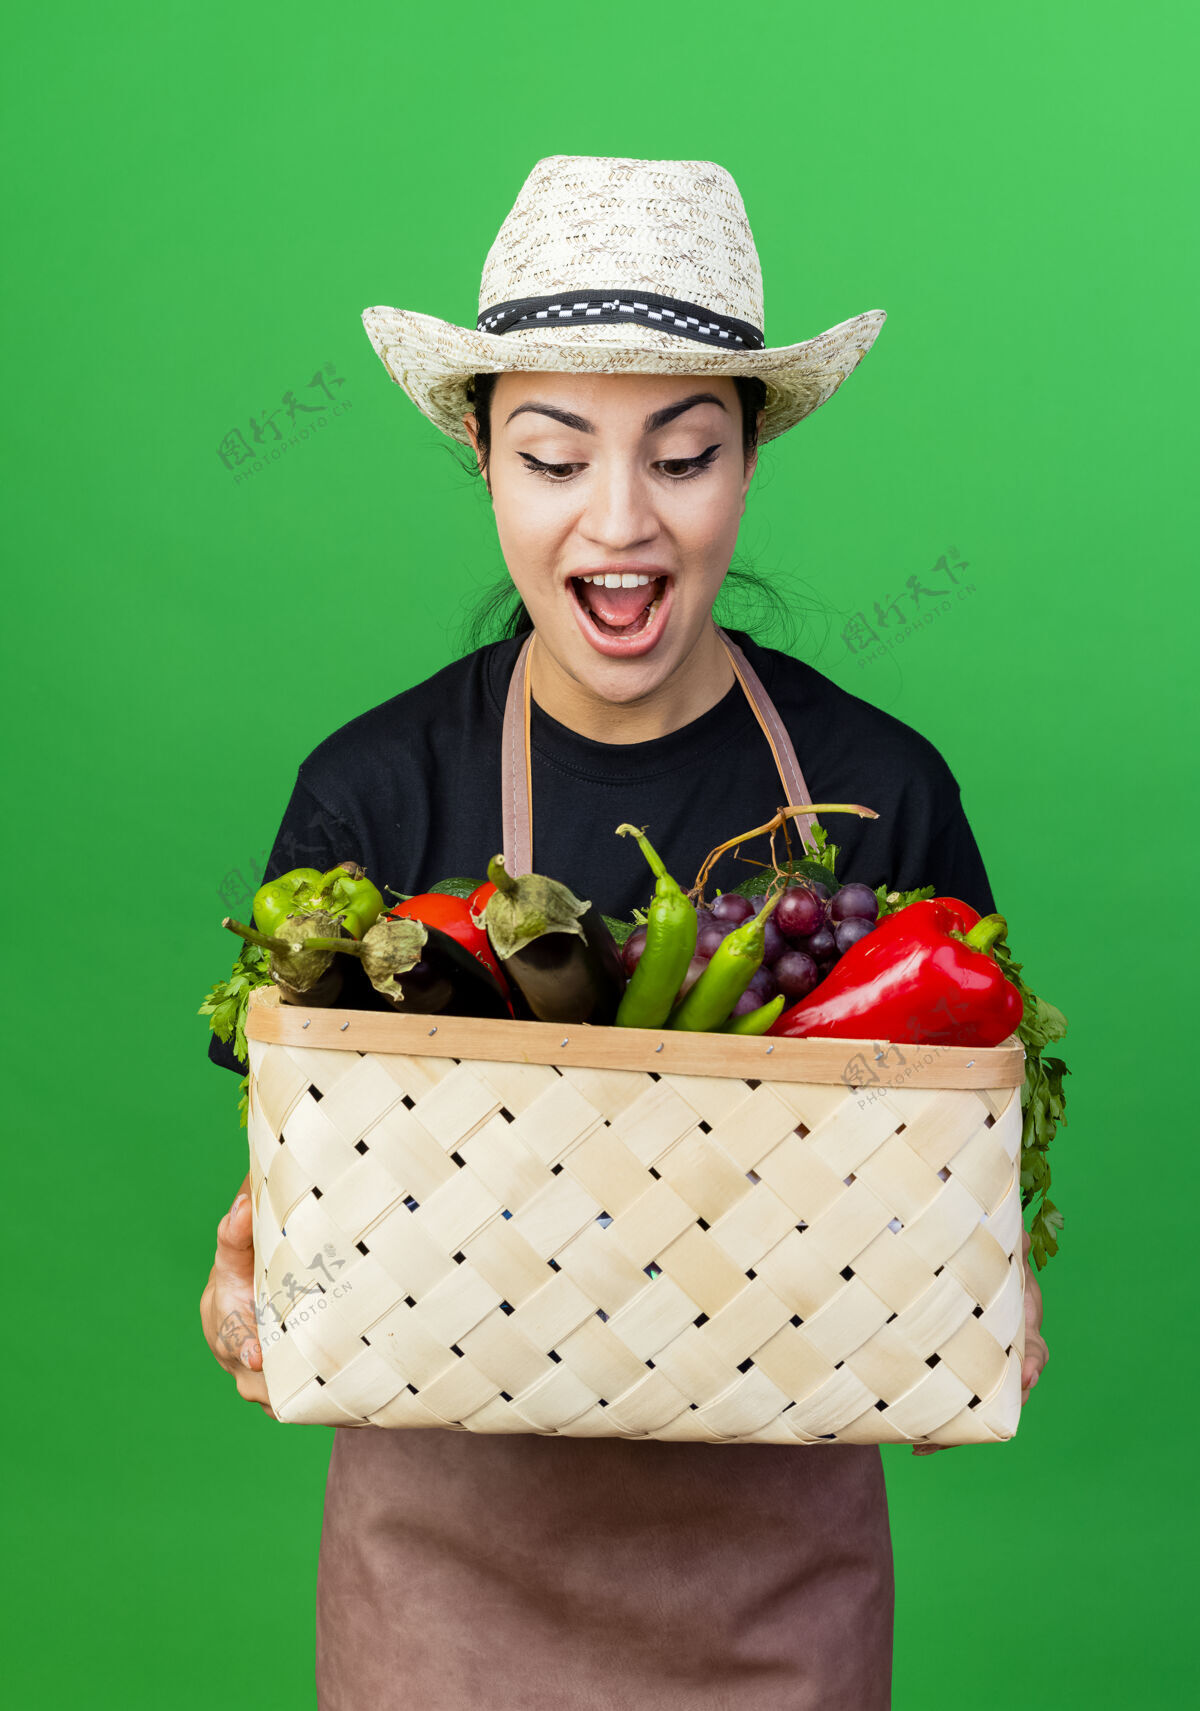 围裙年轻漂亮的女园丁 围着围裙 戴着帽子 手里拿着装满蔬菜的篮子 微笑着看着它 站在绿色的墙上 惊讶地笑着女人脸微笑